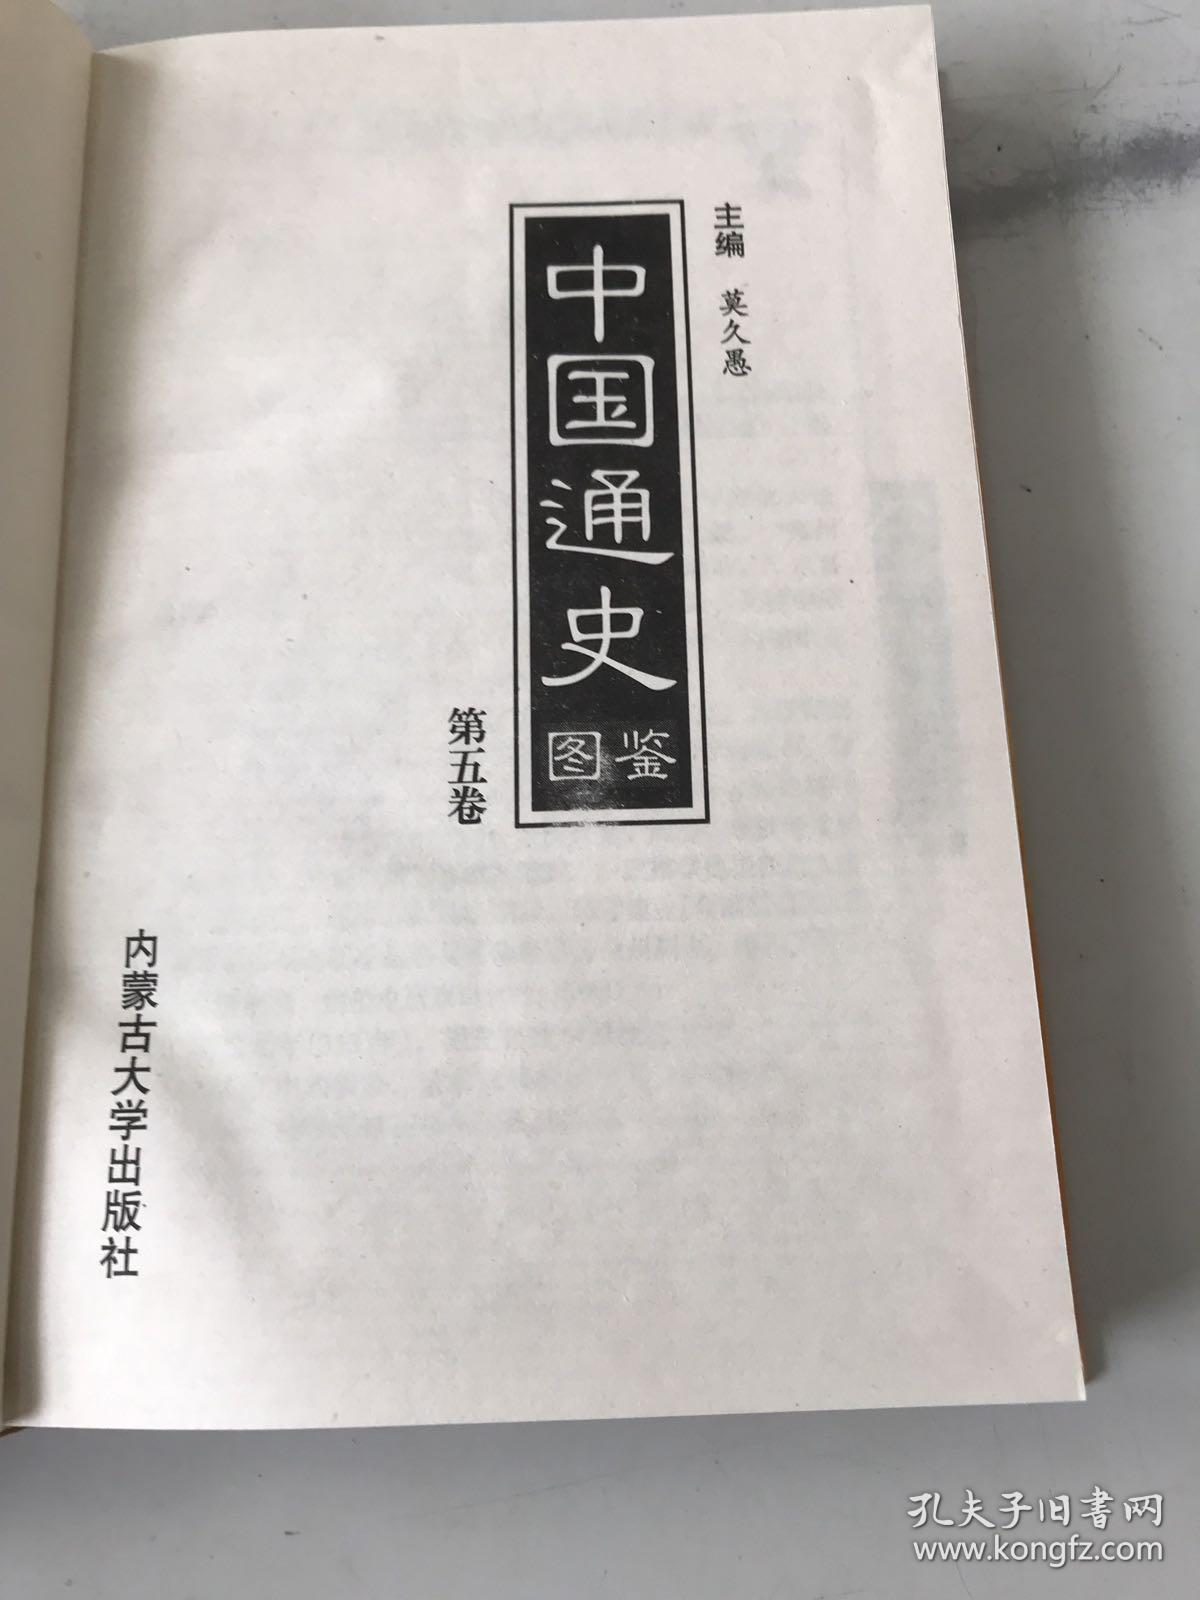 中国通史图鉴.全12册